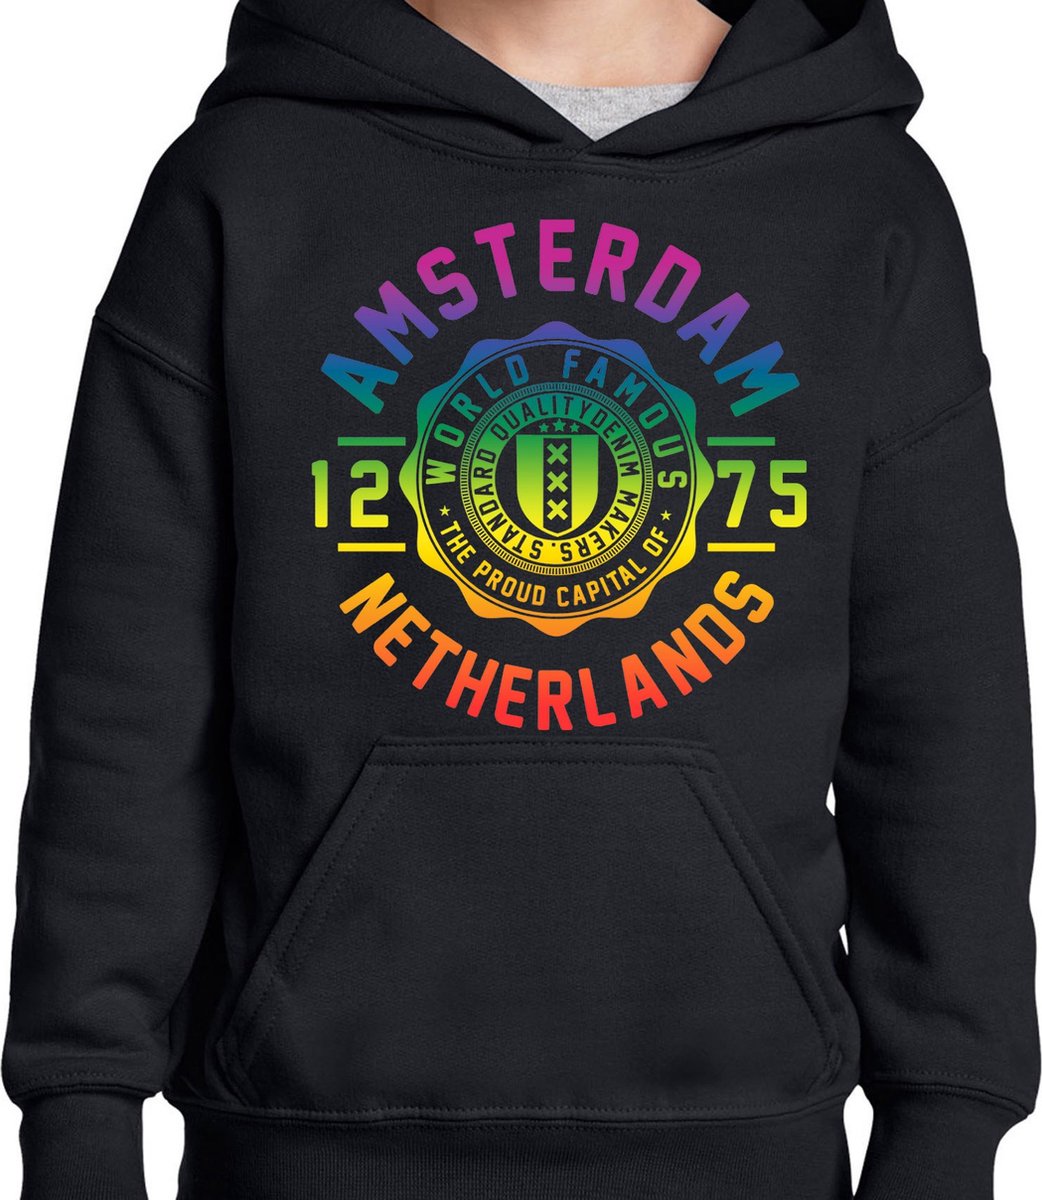 Hooded Sweater - Met Trekkoord - Capuchon - Chill - Trui - Vest - met capuchon - Outdoor - Gay Pride - Pride Rainbow - Regenboog - Amsterdam - World Famous - Zwart - Maat XXL - 2XL